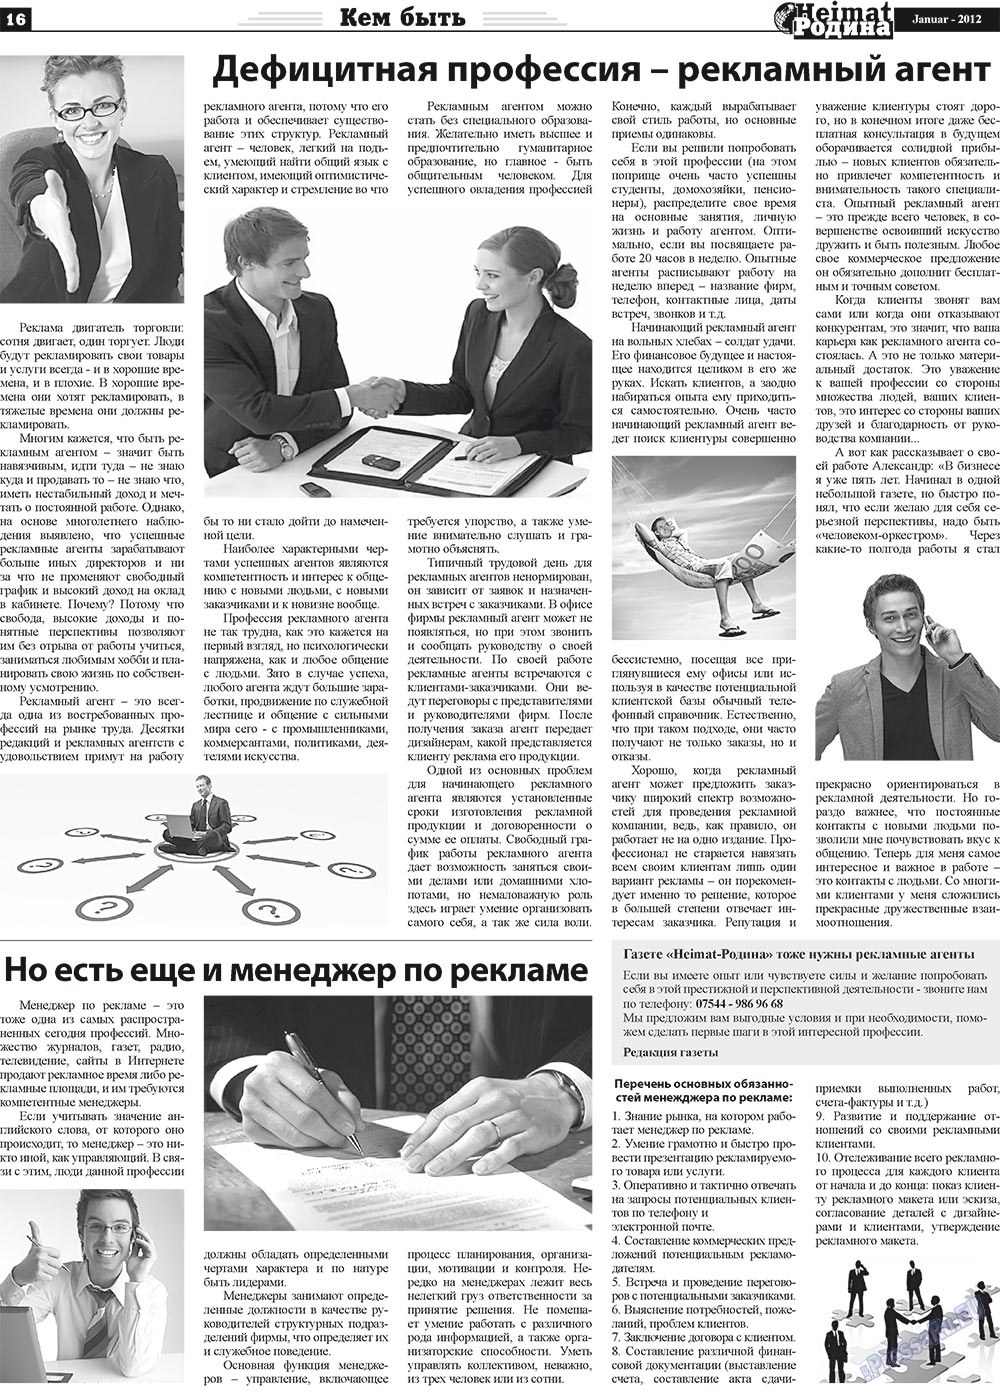 Heimat-Родина (газета). 2012 год, номер 1, стр. 16